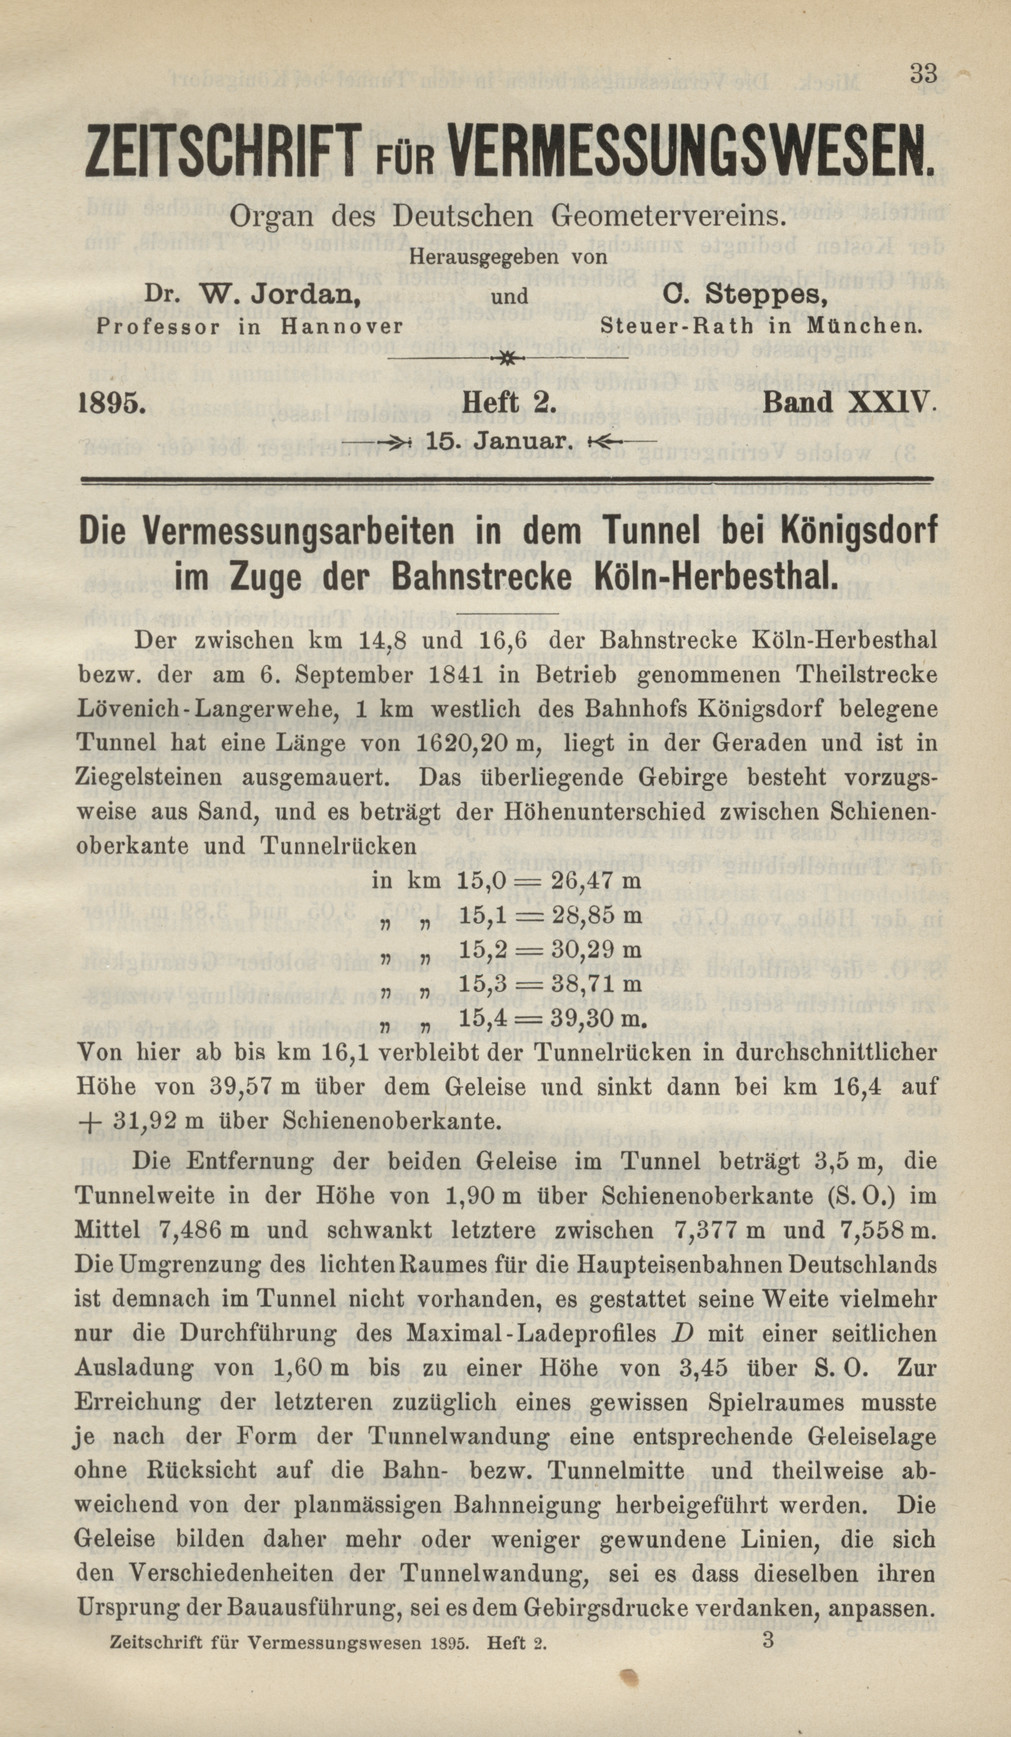 Zeitschrift für Vermessungswesen, Heft 2, Band XXIV